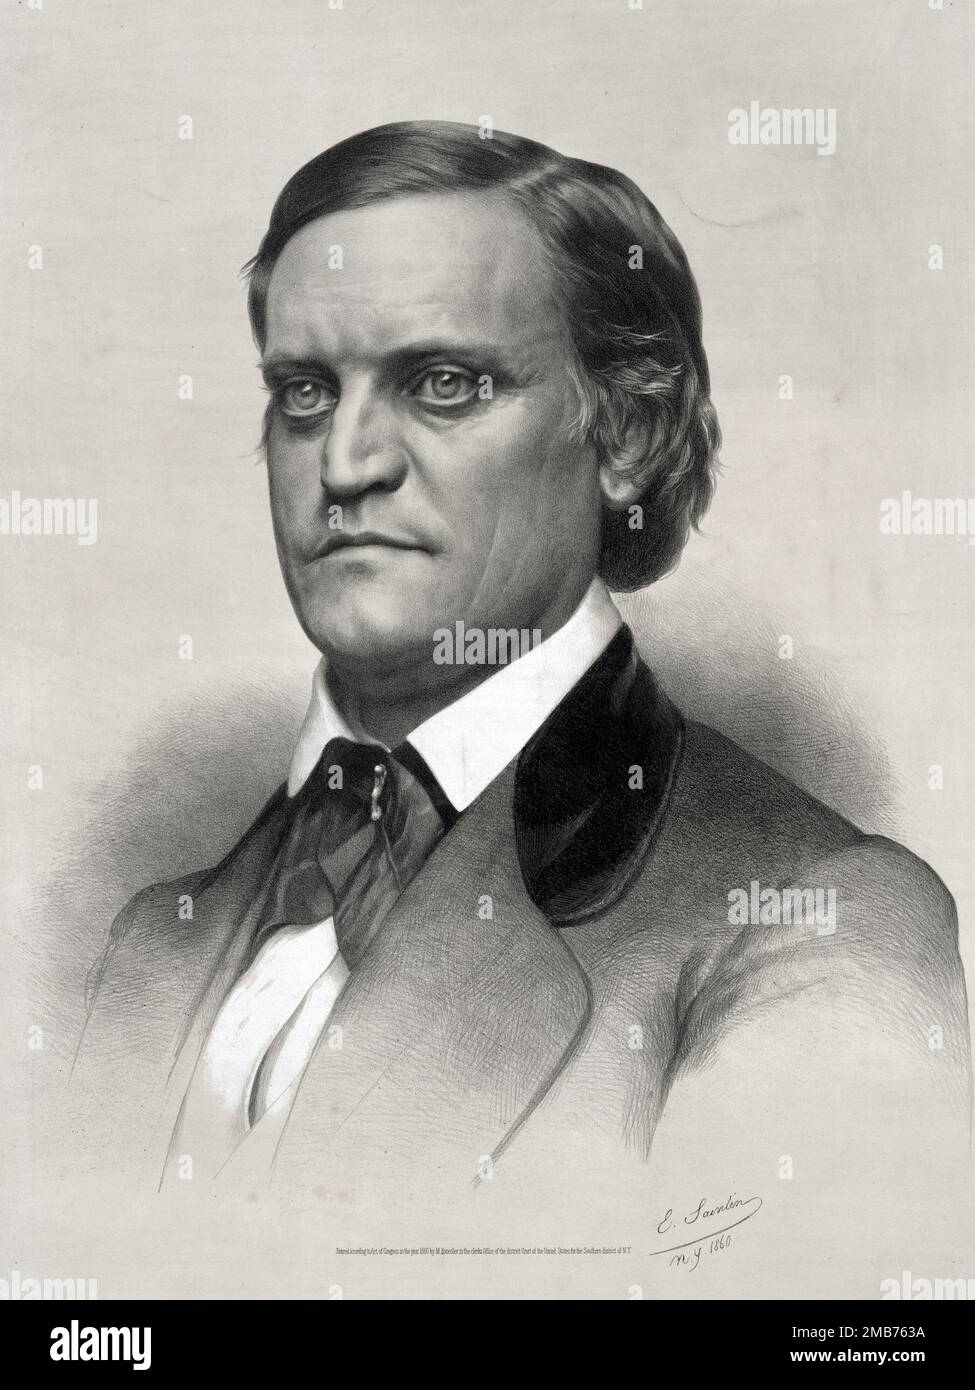 John C. Breckinridge, vicepresidente degli Stati Uniti sotto la presidenza di James Buchanan, è stato comandante e infine segretario di guerra per gli stati confederati durante la guerra civile americana Foto Stock